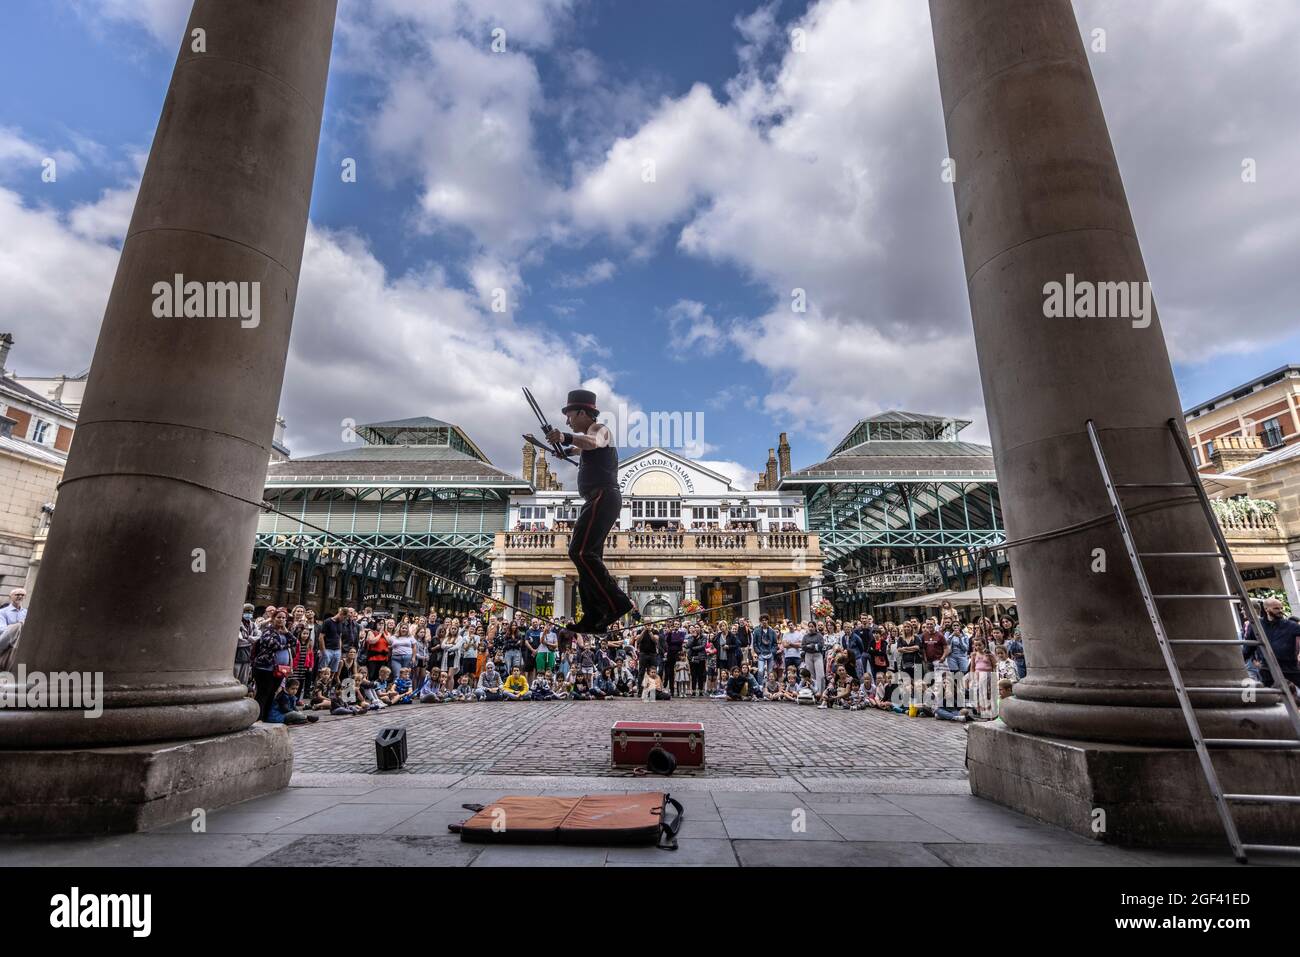 Ein Straßenunterhalter spielt gerne vor großen Menschenmengen auf der Covent Garden Piazza, Central London, England, Großbritannien Stockfoto